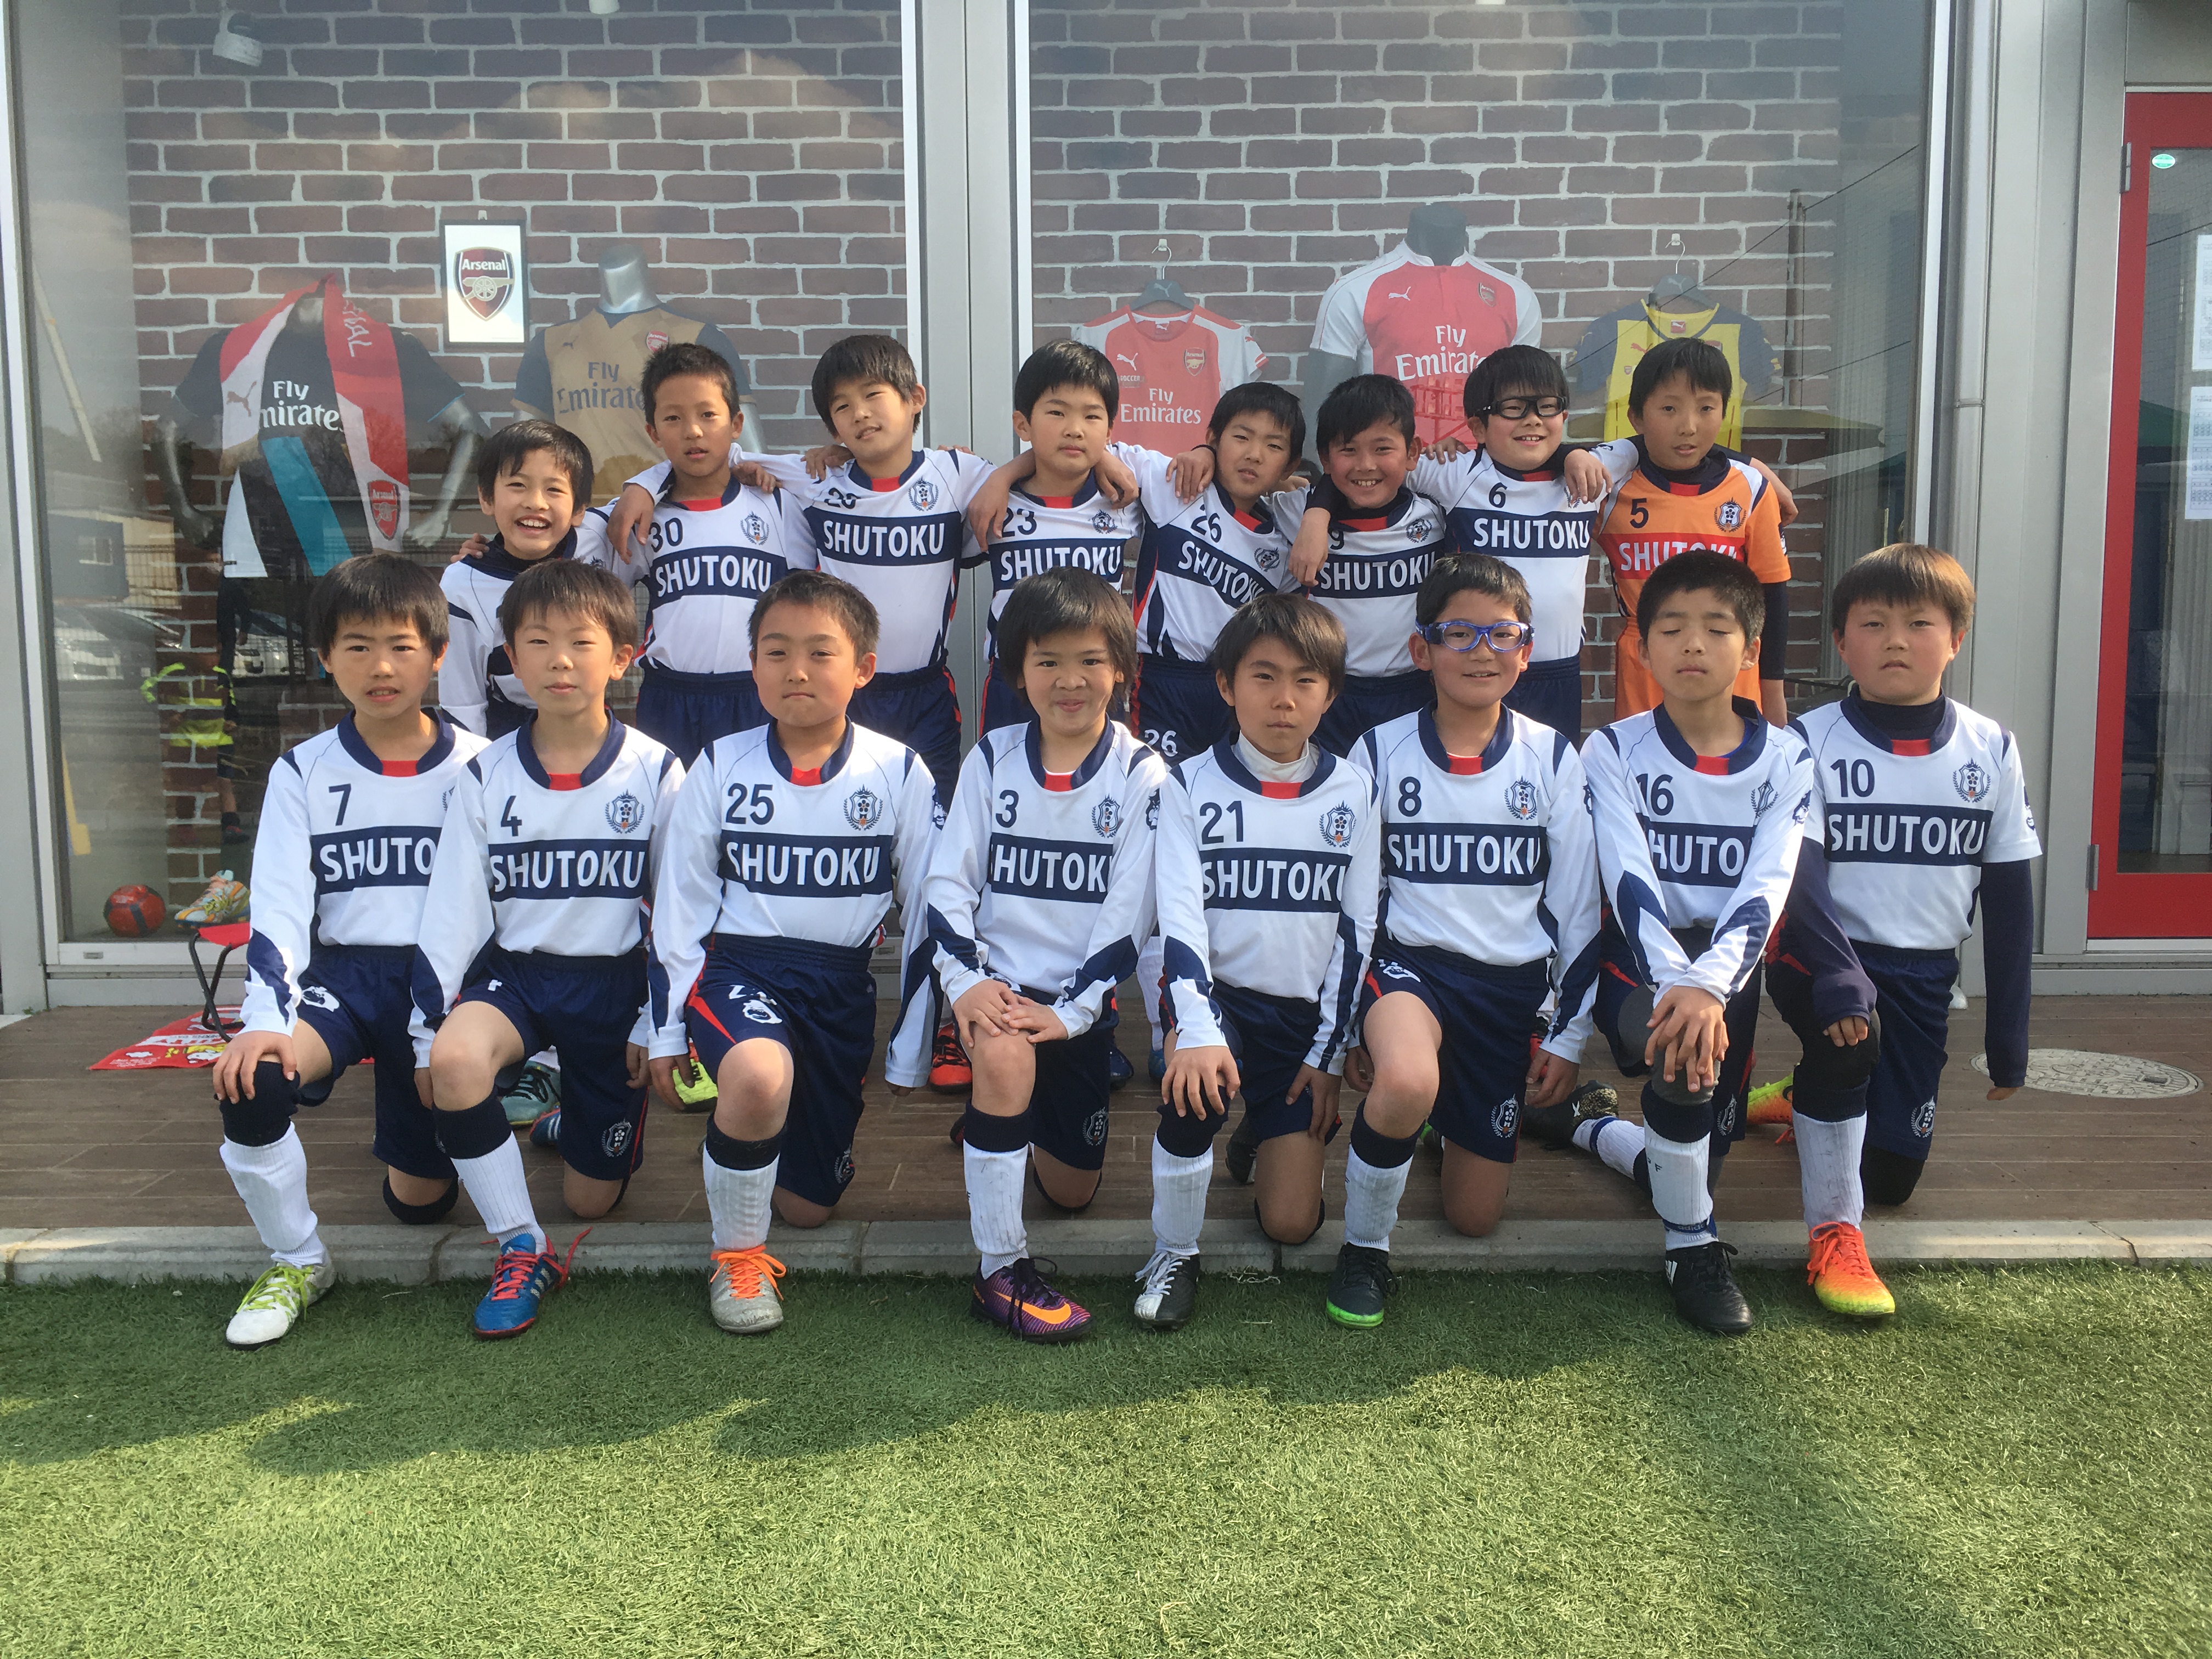 修徳fc ジュニア選手コース 幼児 小学生のサッカースクール 17 3月